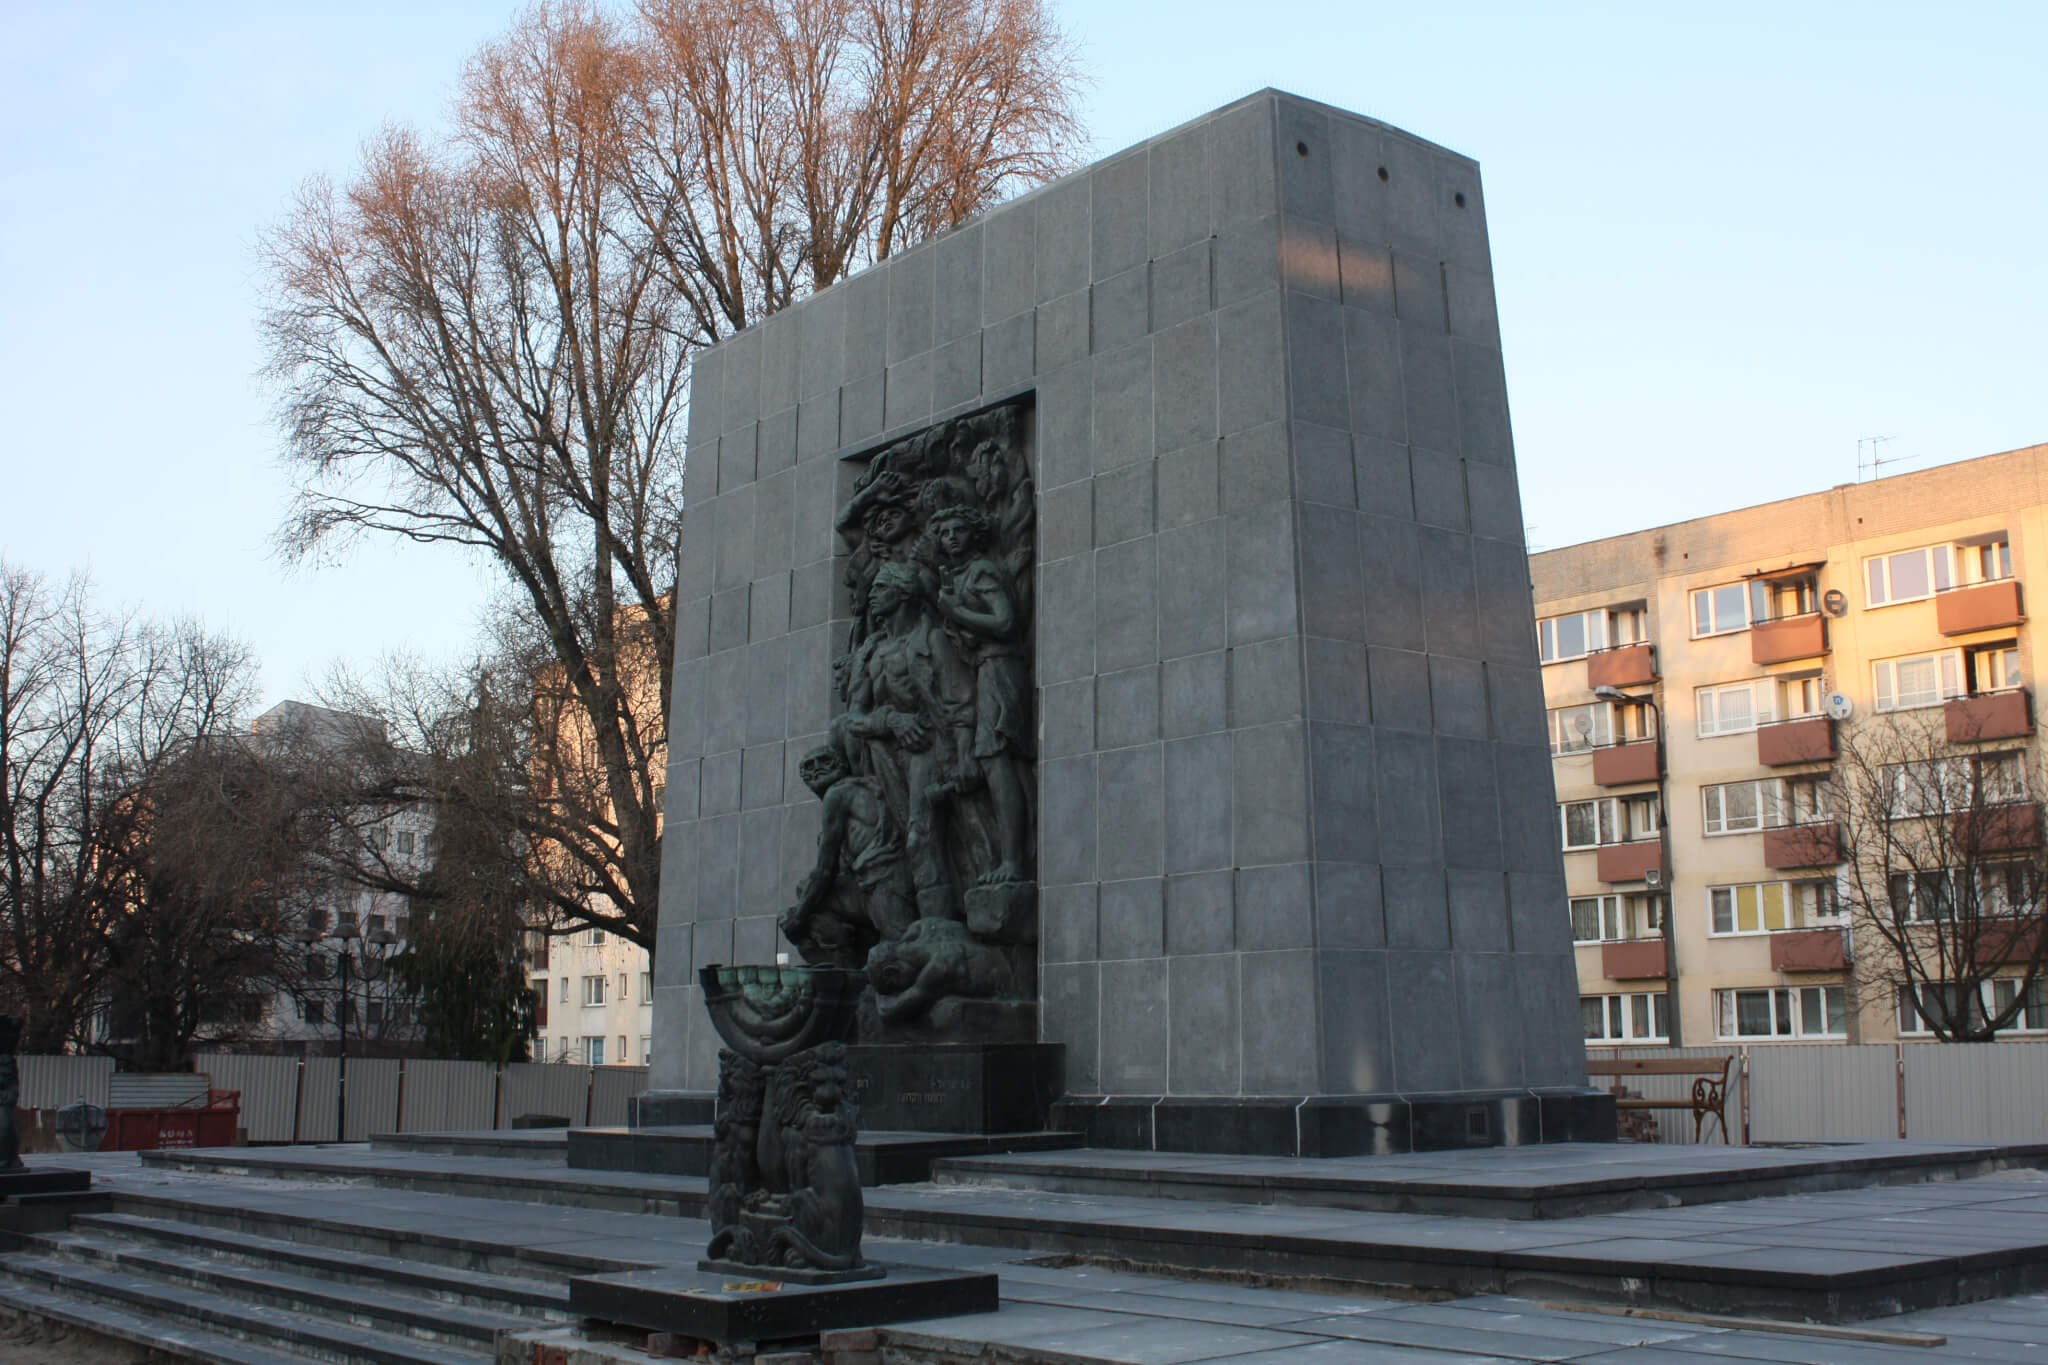 Pomnik Bohaterów Getta w Warszawie, Warszawa, Poland